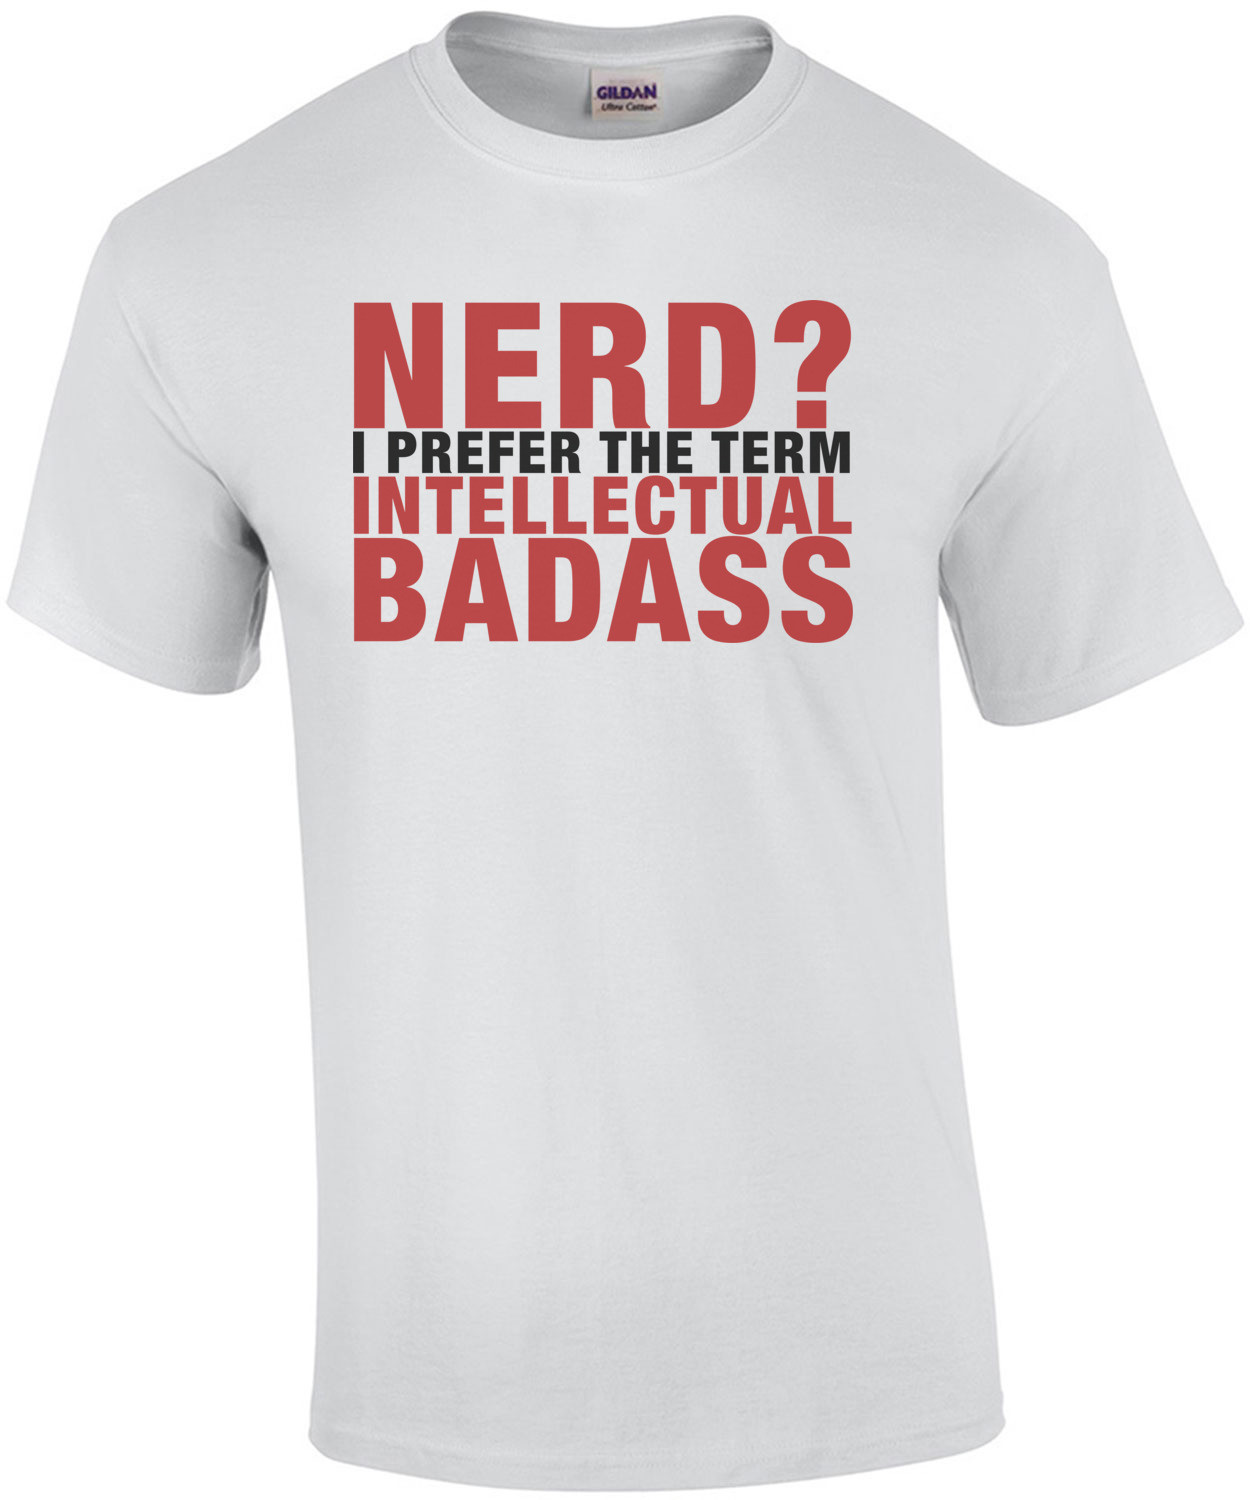 Nerd? I Prefer the Term Intellectual Badass T-Shirt